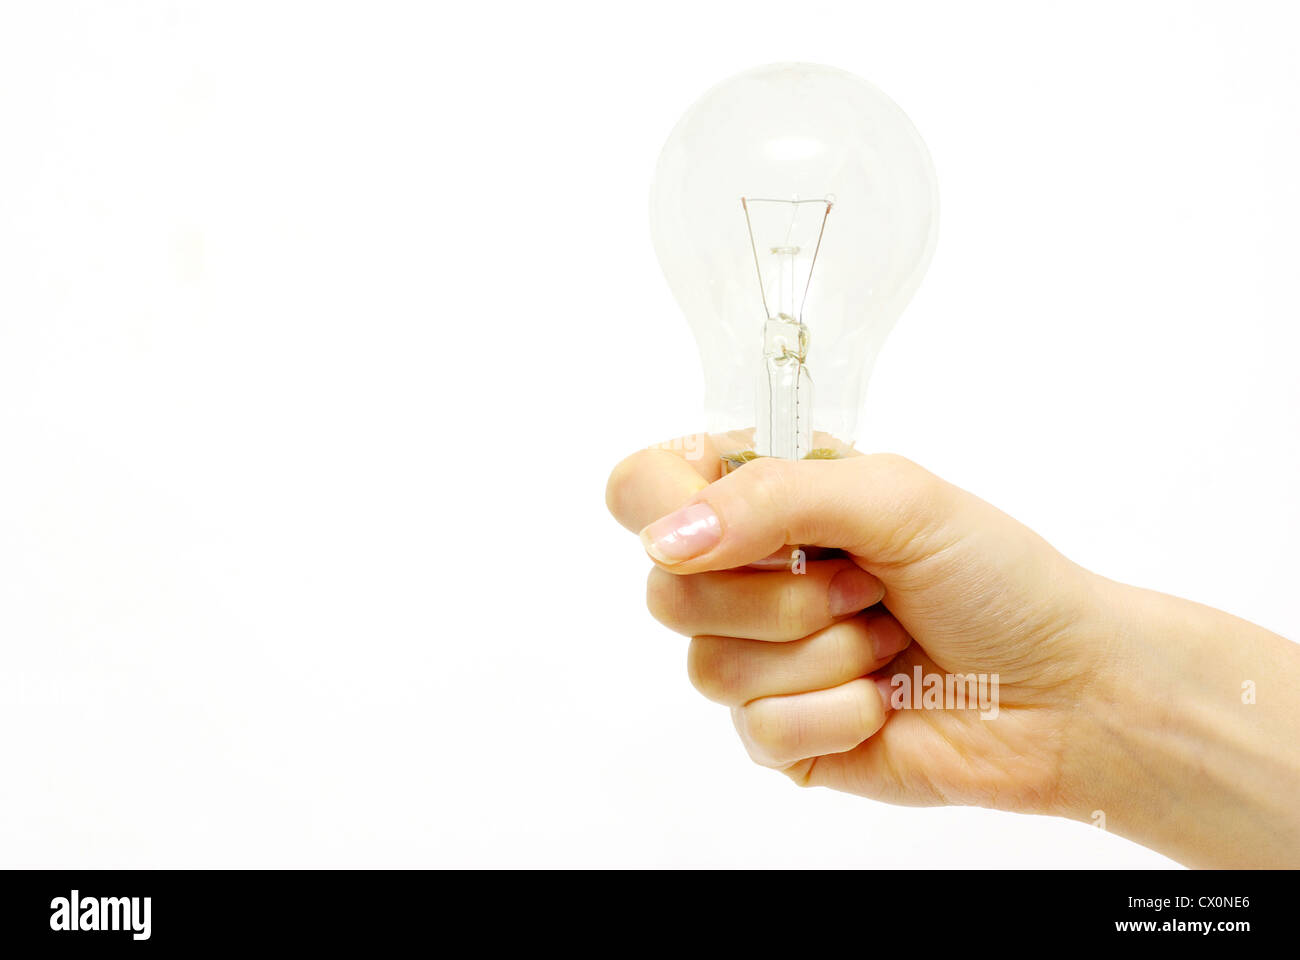 Female hand holding bulb isolated on white background Stock Photo